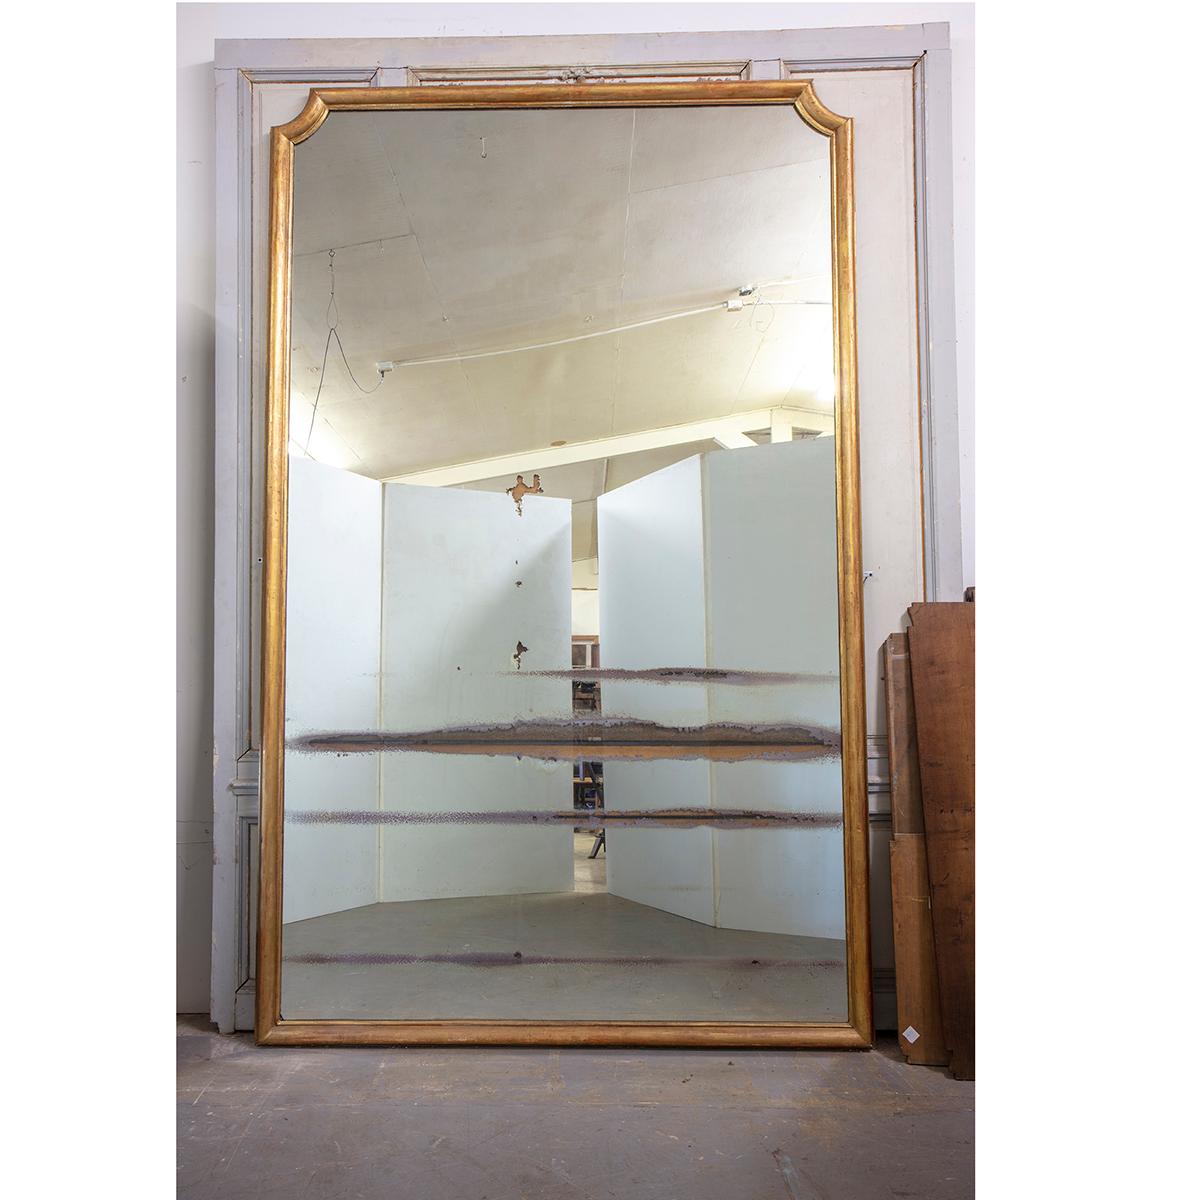 Dies ist ein massiver französischer Spiegel aus dem 19. Jahrhundert aus dem Hauptsaal des erzbischöflichen Palastes in Rouen, Normandie, Frankreich. Dieser Spiegel ist über 10' hoch und mehr als 6' breit. Sowohl der Rahmen als auch der Spiegel